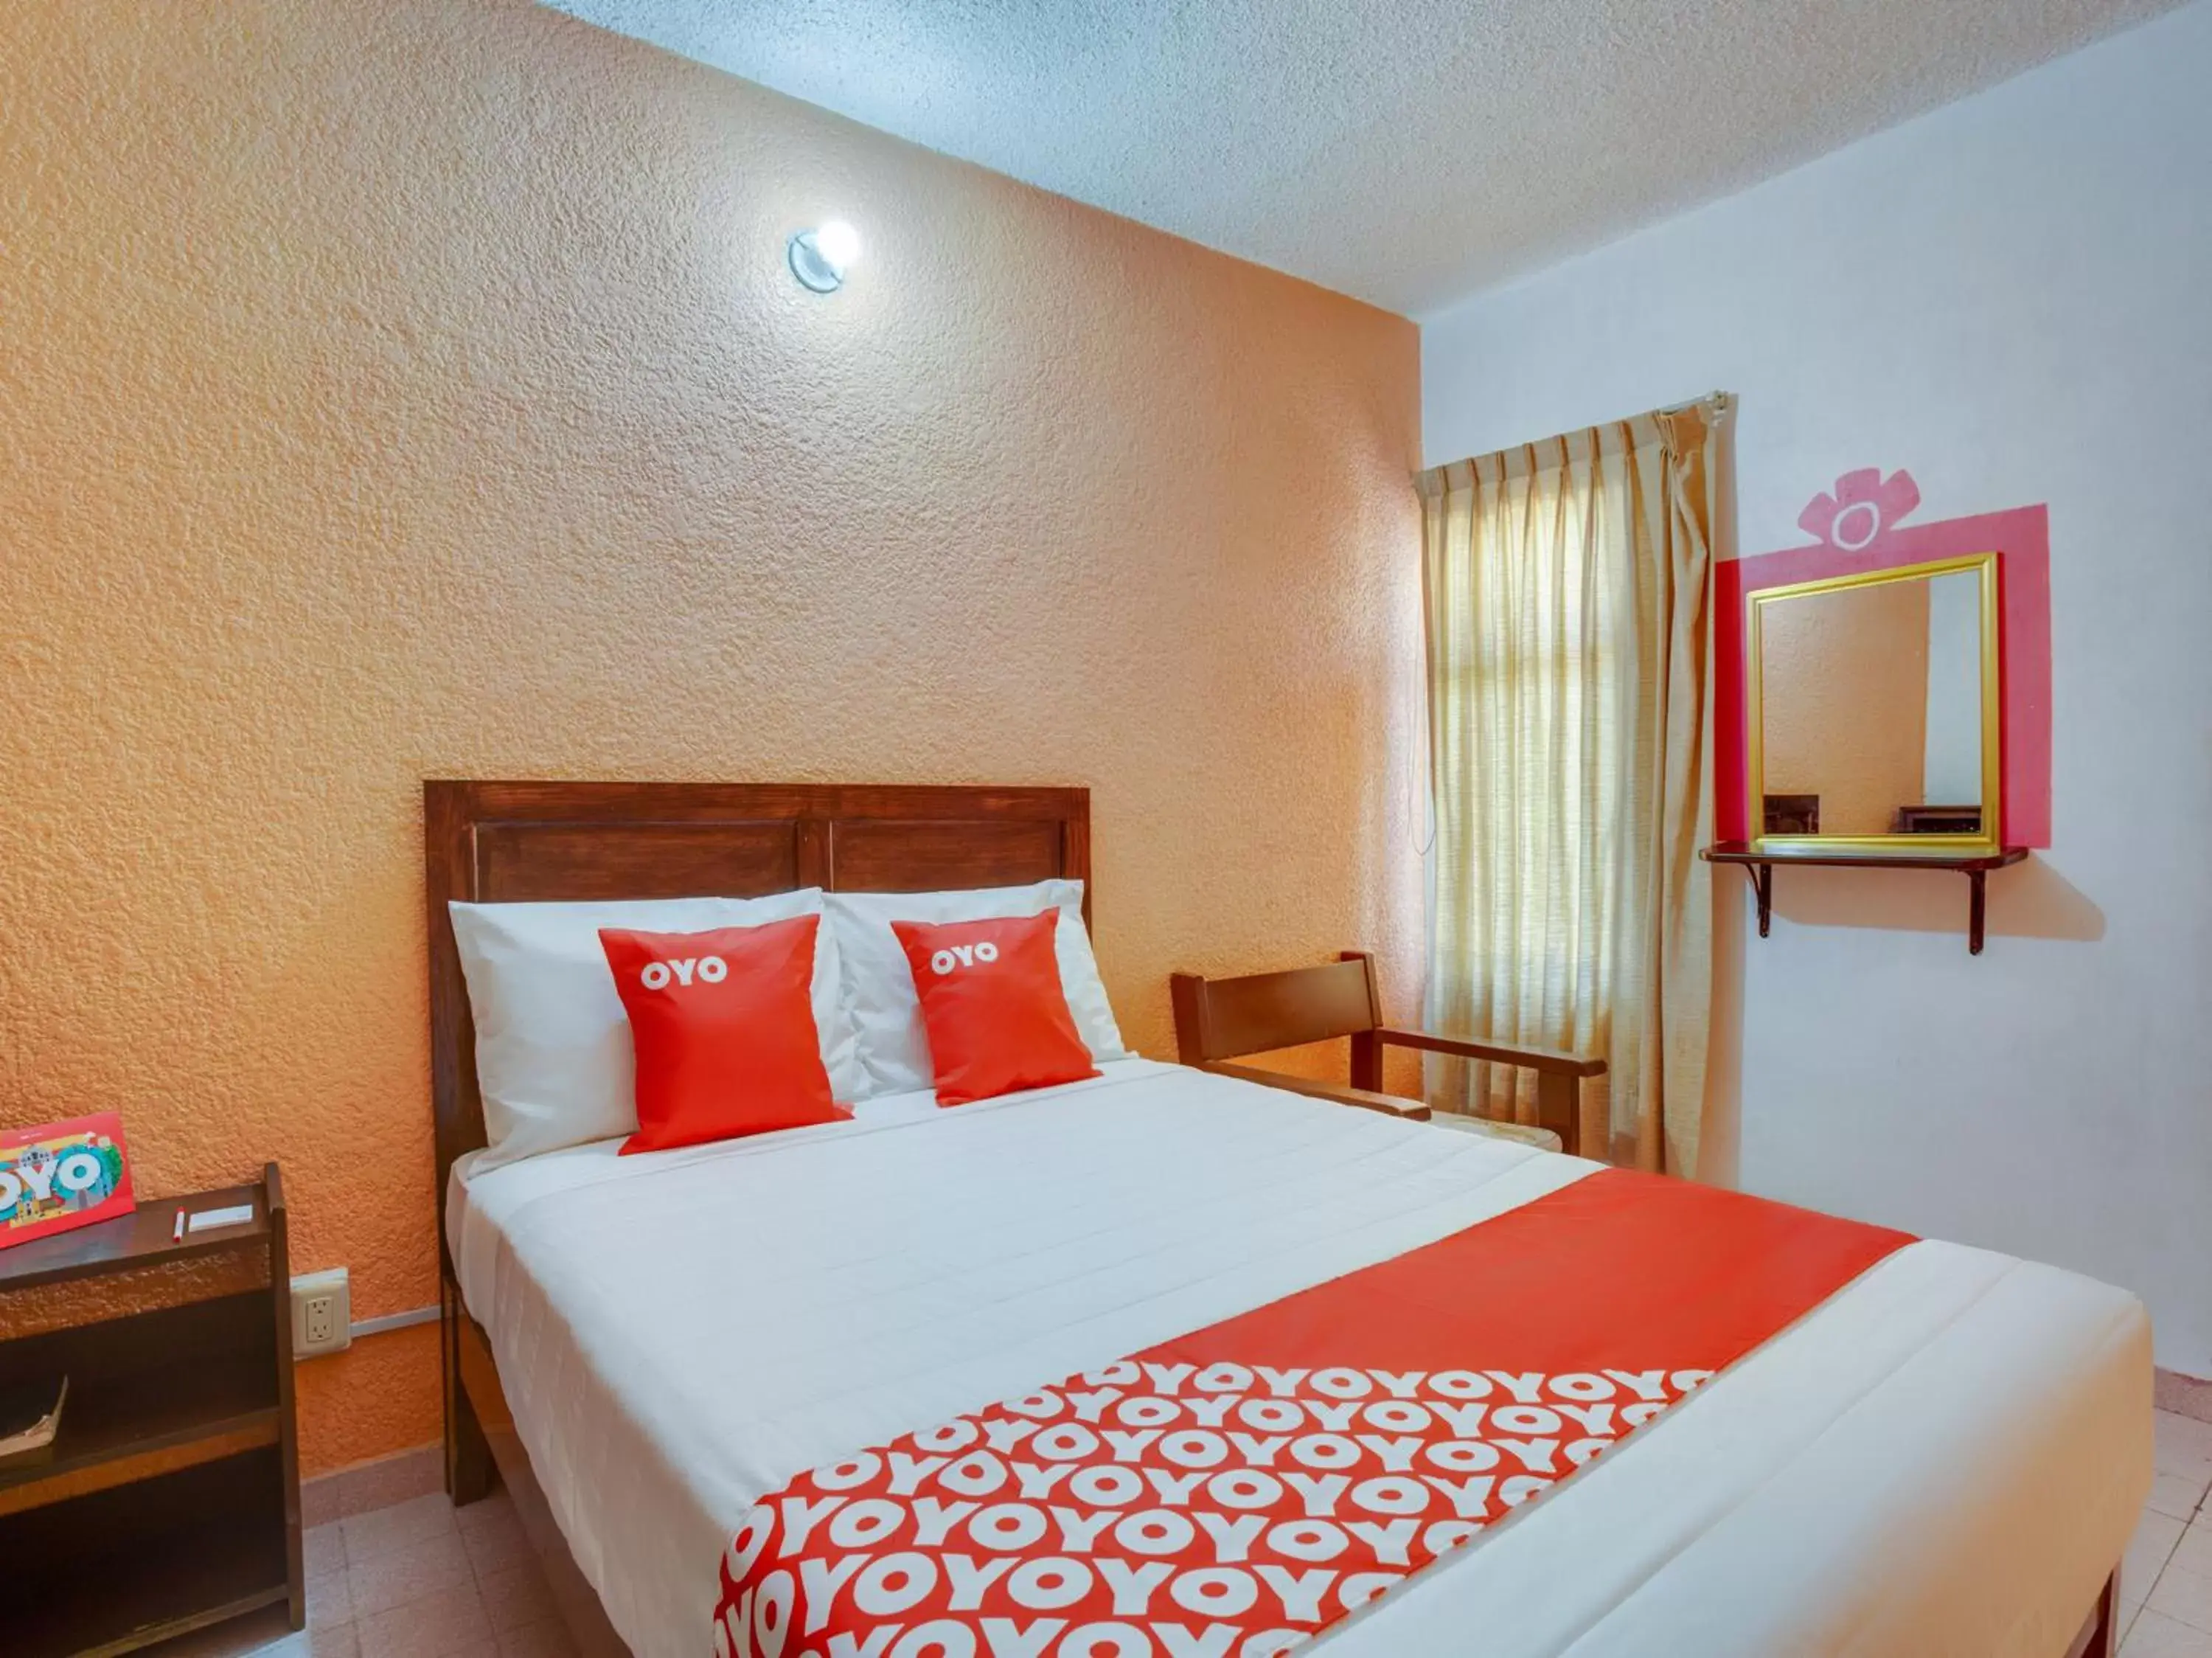 Bedroom in OYO Hotel Huautla, Oaxaca